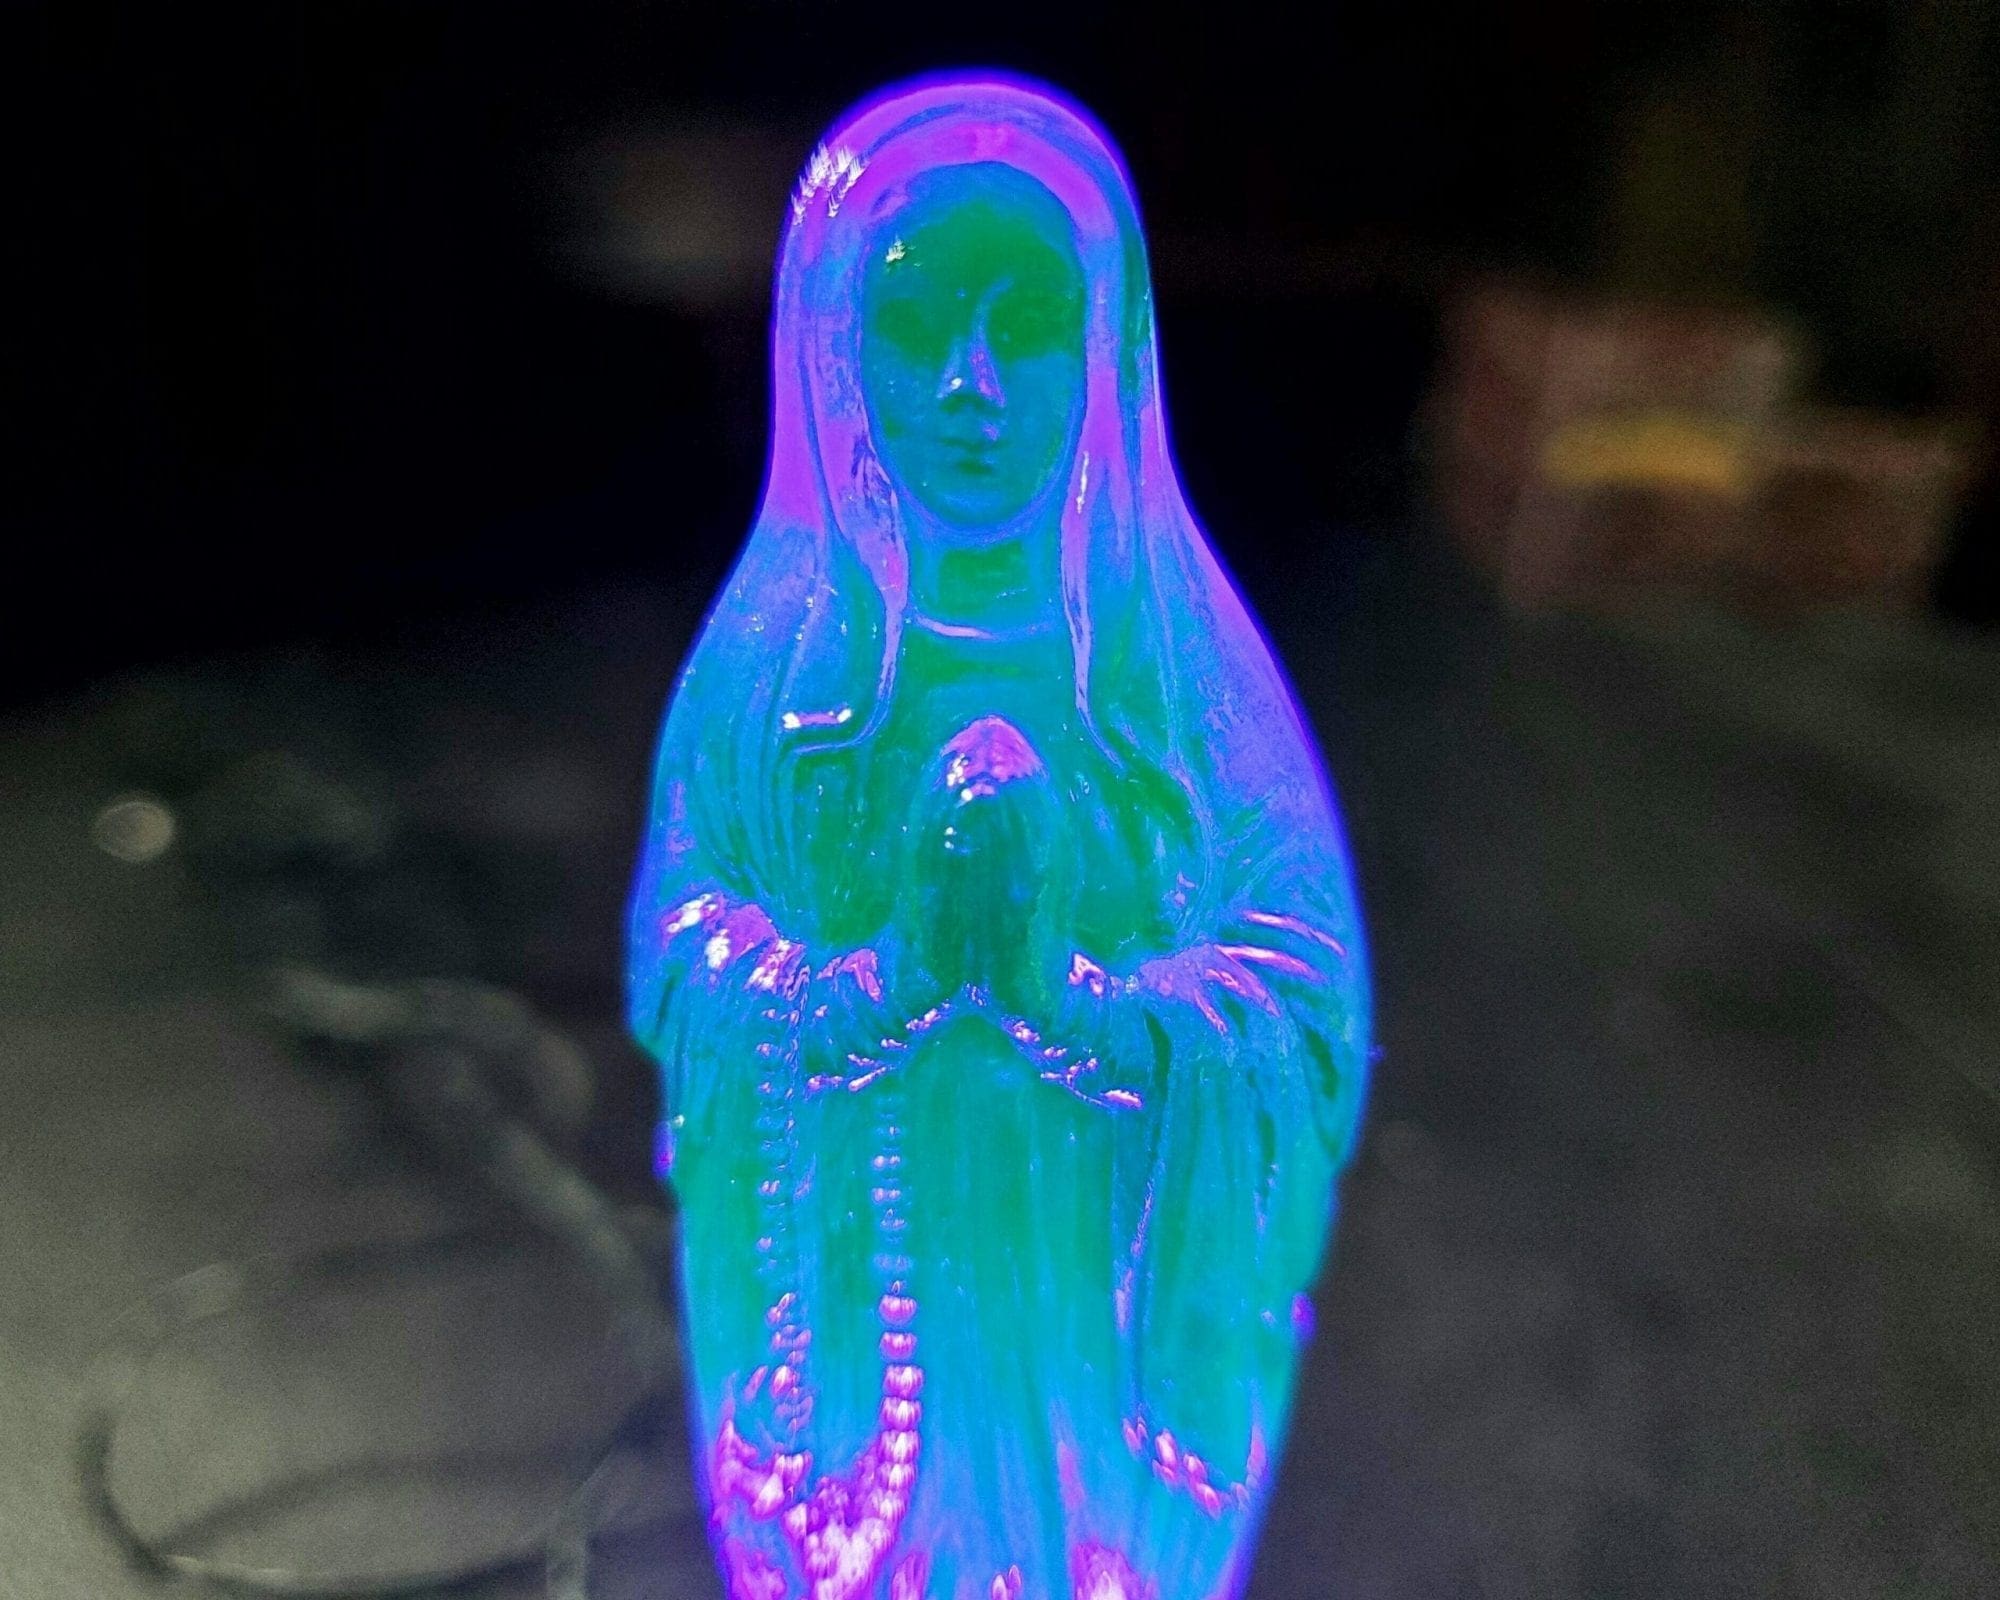 Radioactive Virgin Mary, Vintage Uranium Glass Figurine, Vaseline Glass